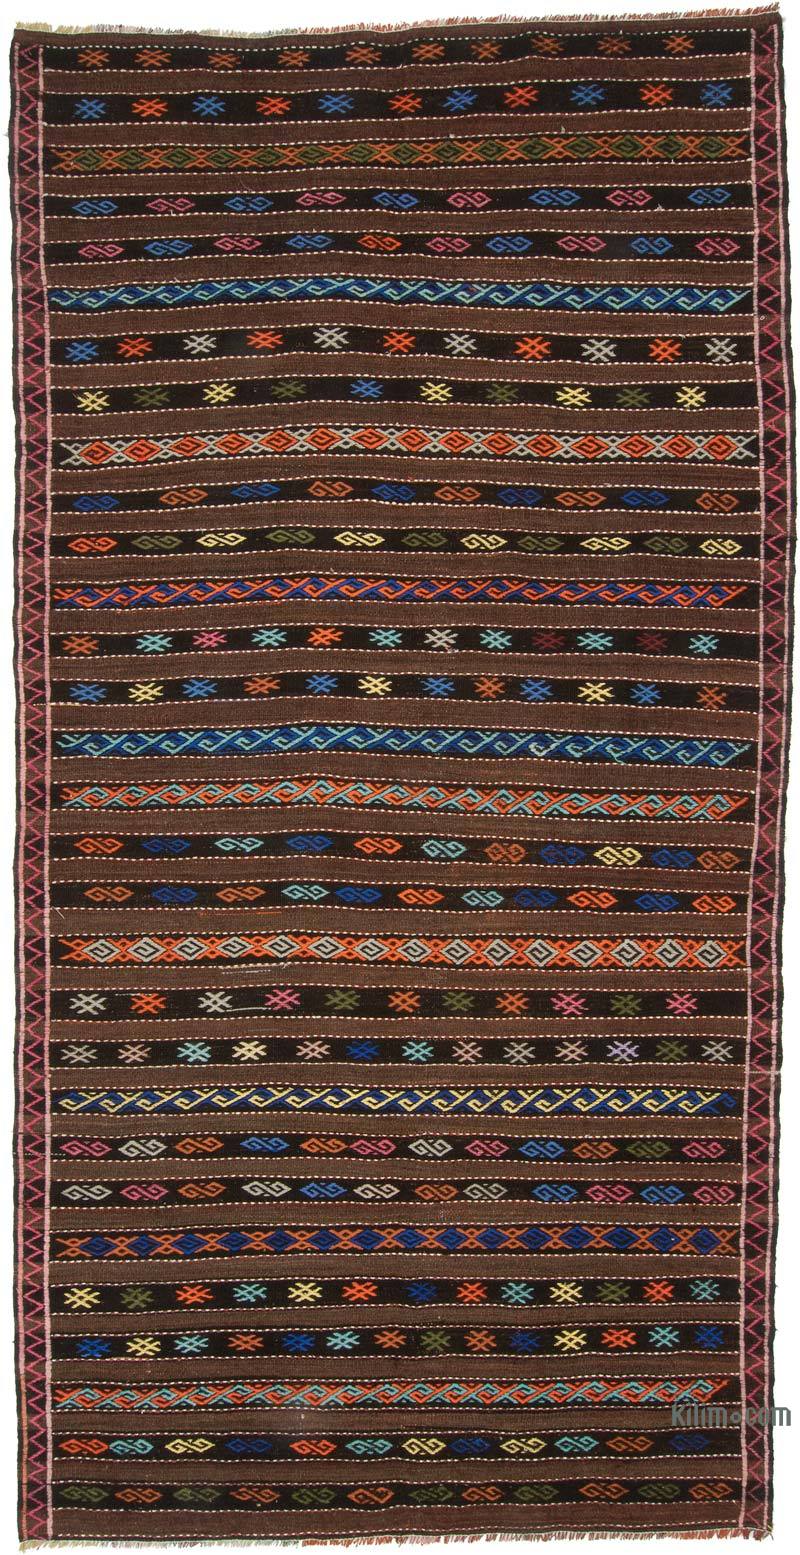 Marrón, Multicolor Alfombra Vintage Kilim Turca - 185 cm x 370 cm - K0047082